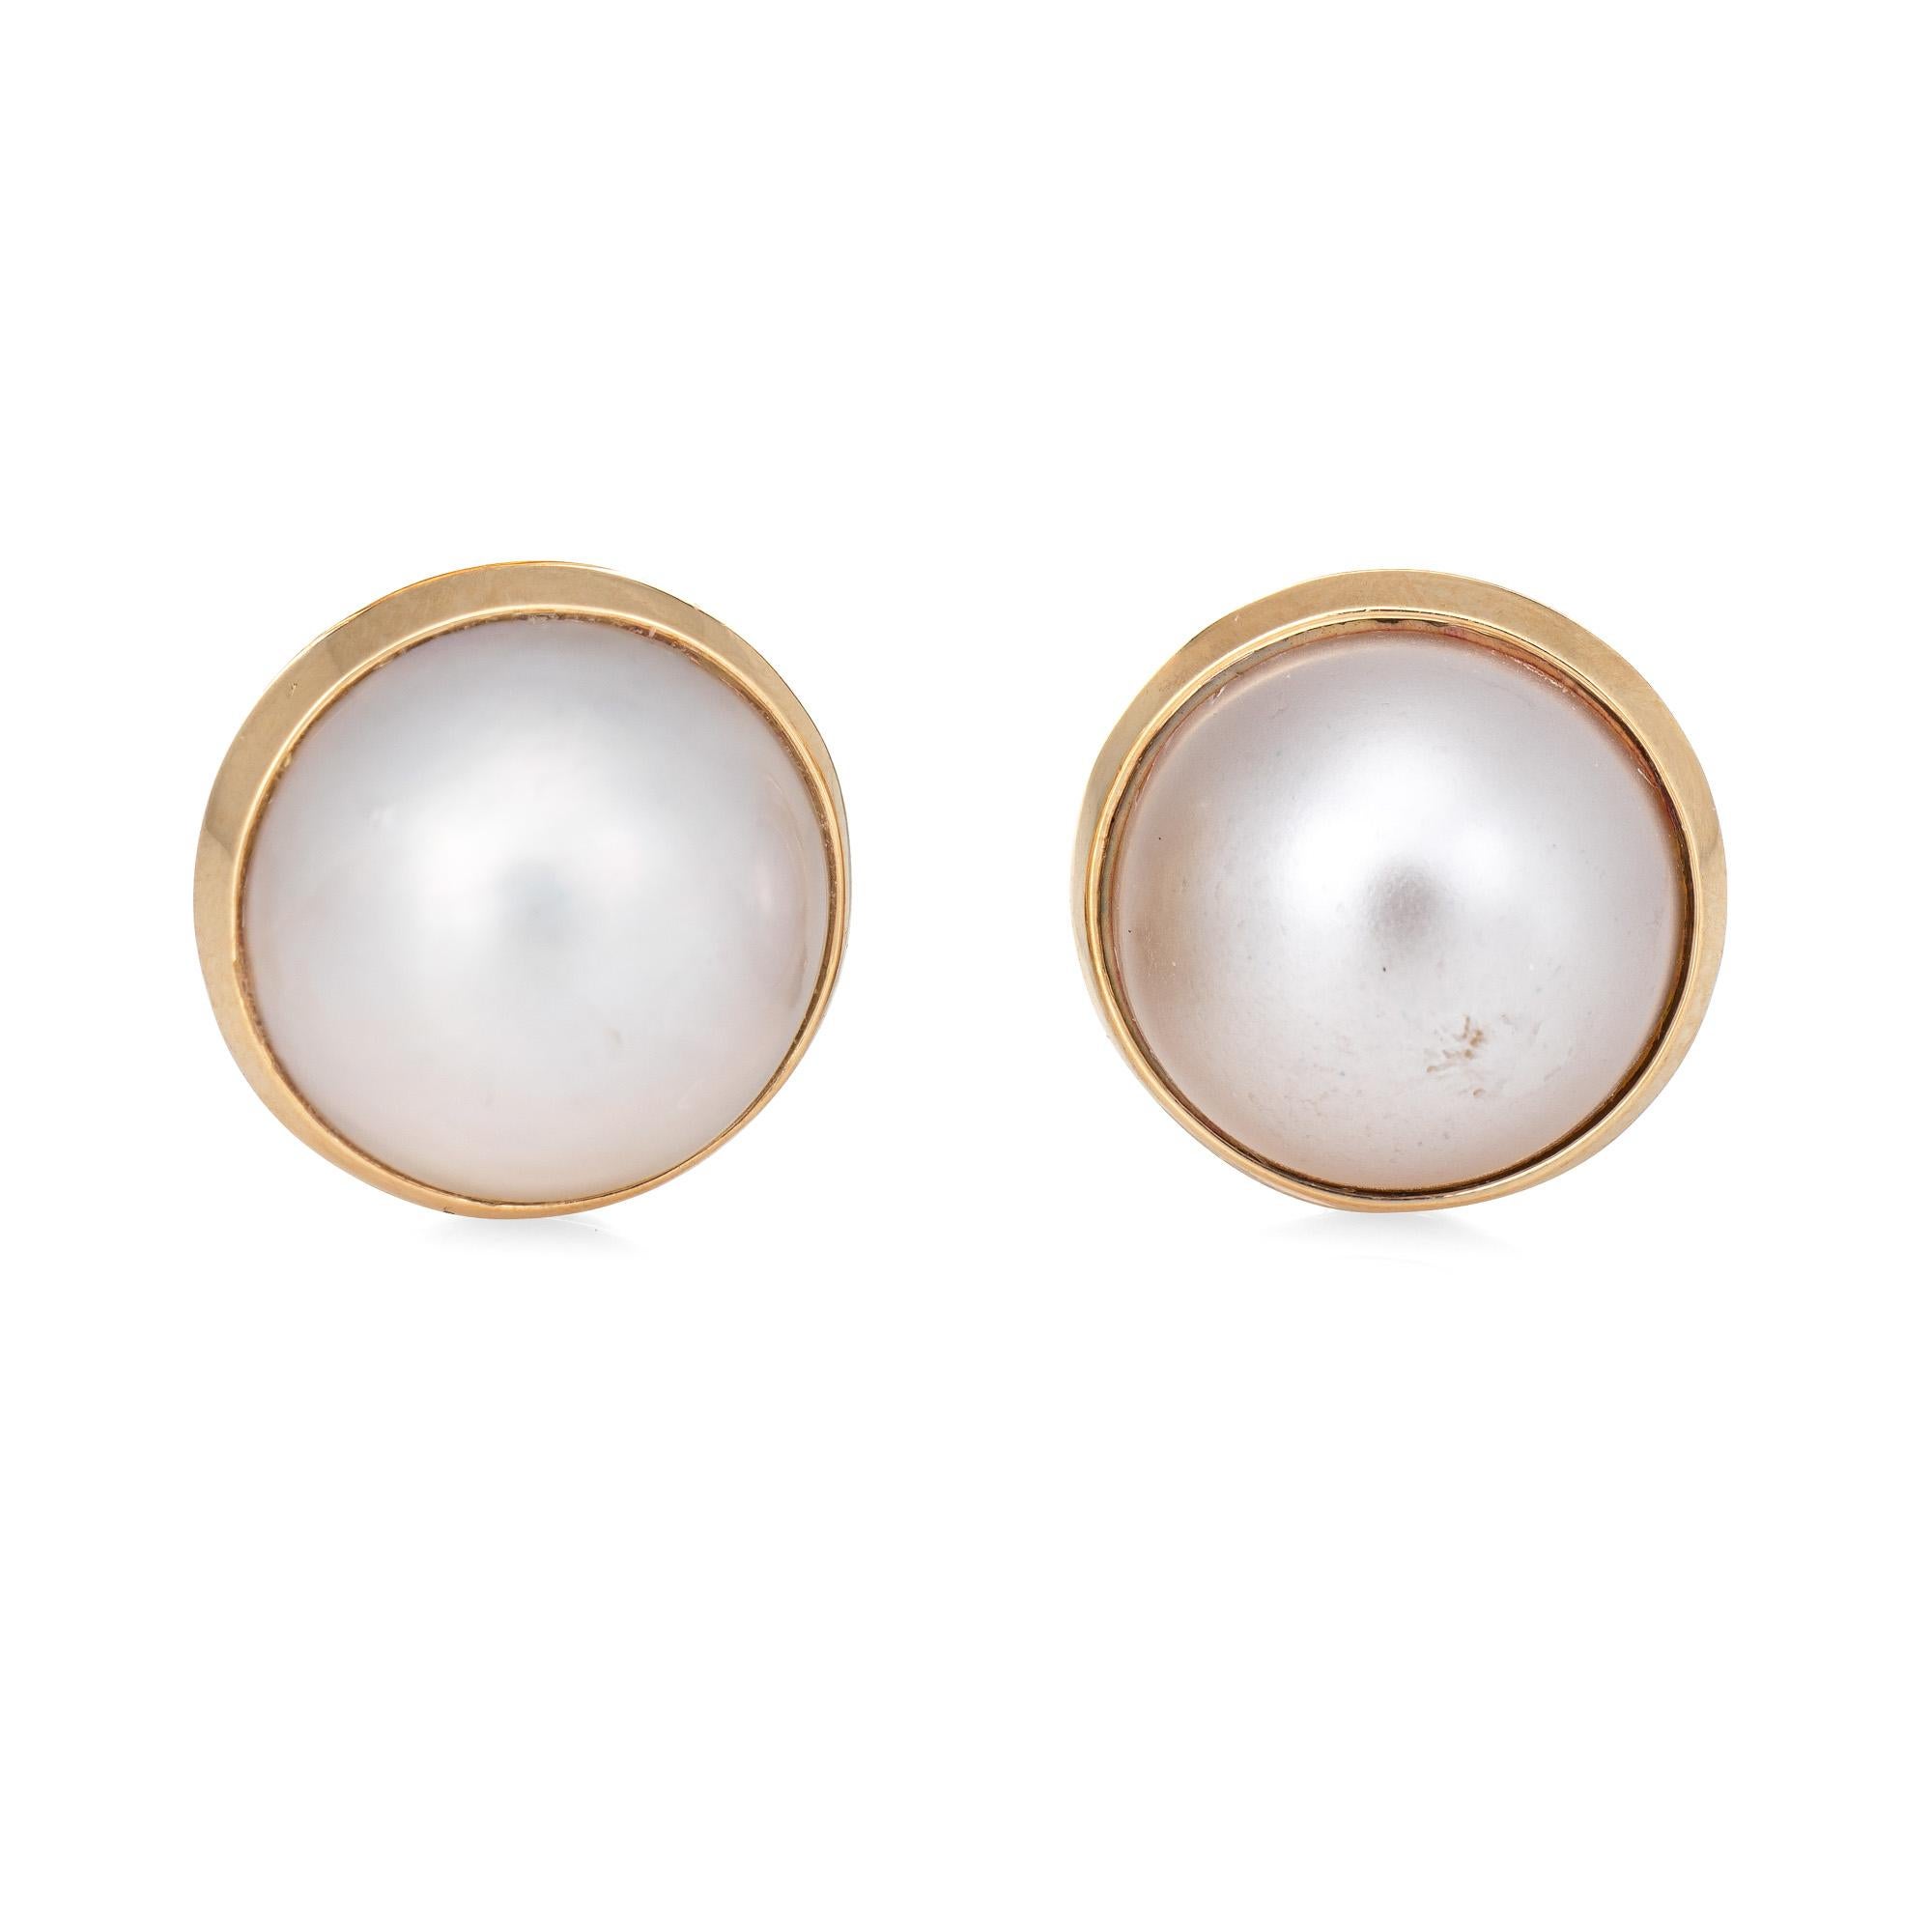 mabe pearl earrings 14k